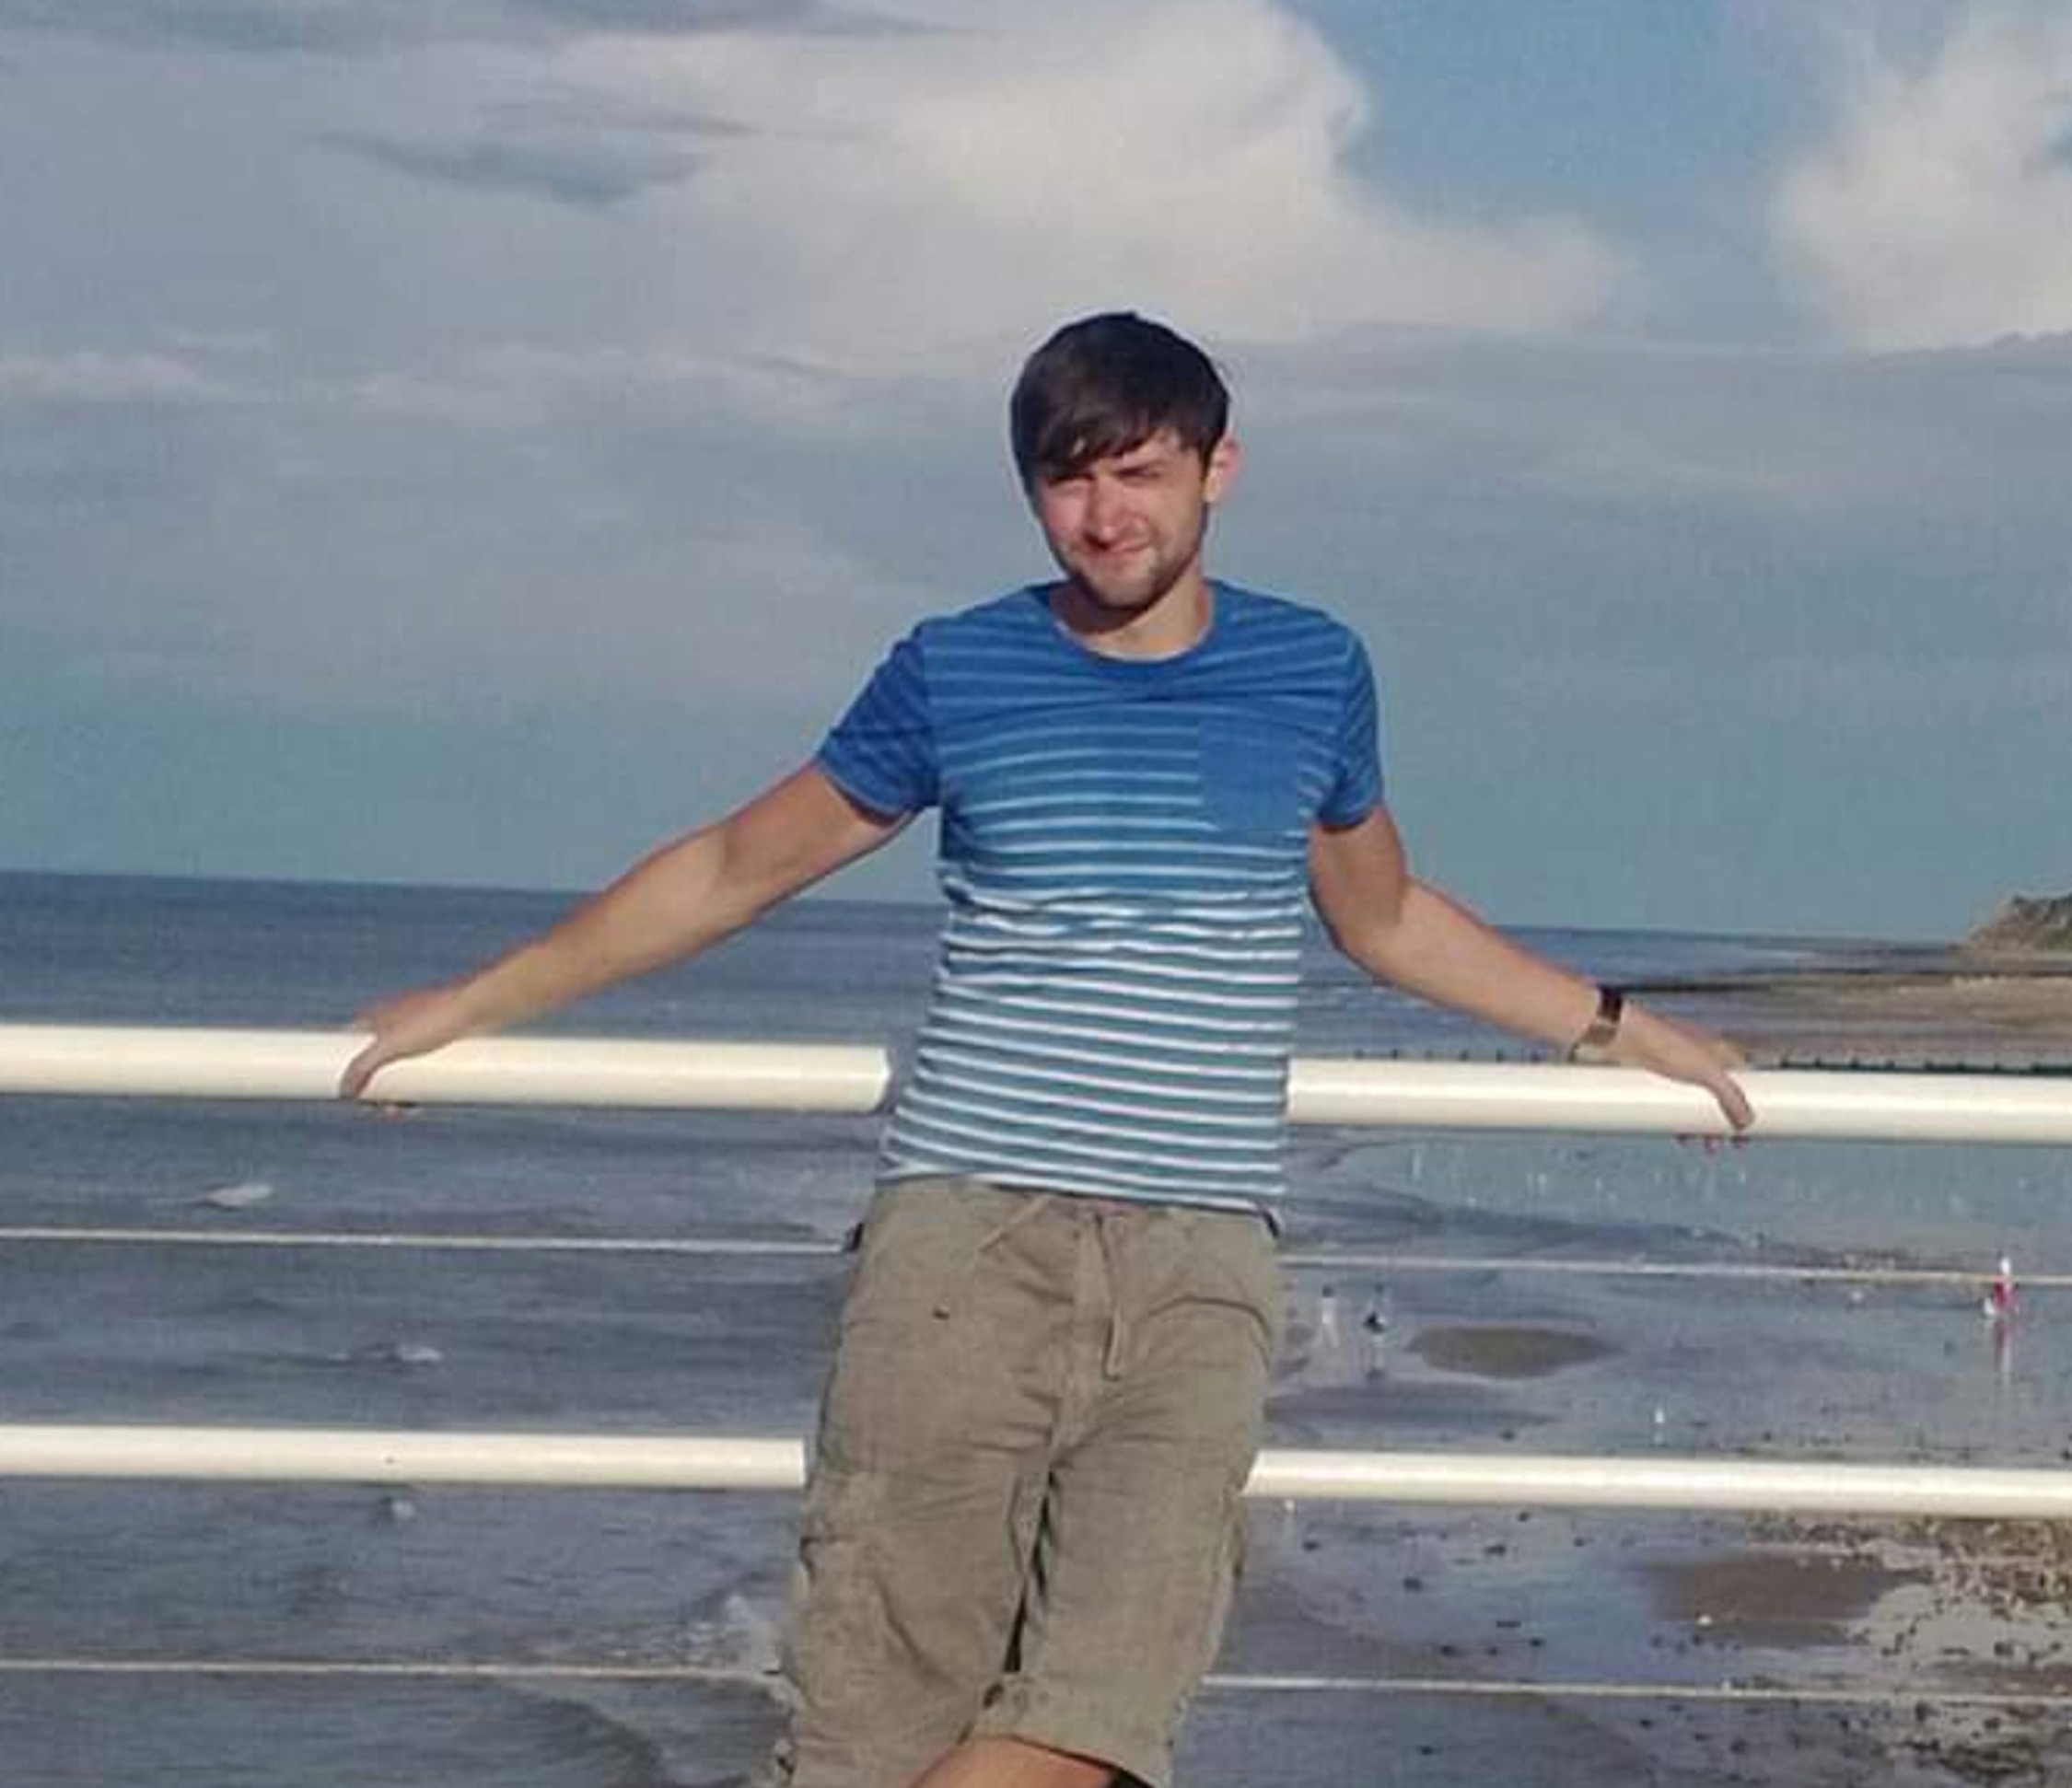 Dan at Cromer beach.